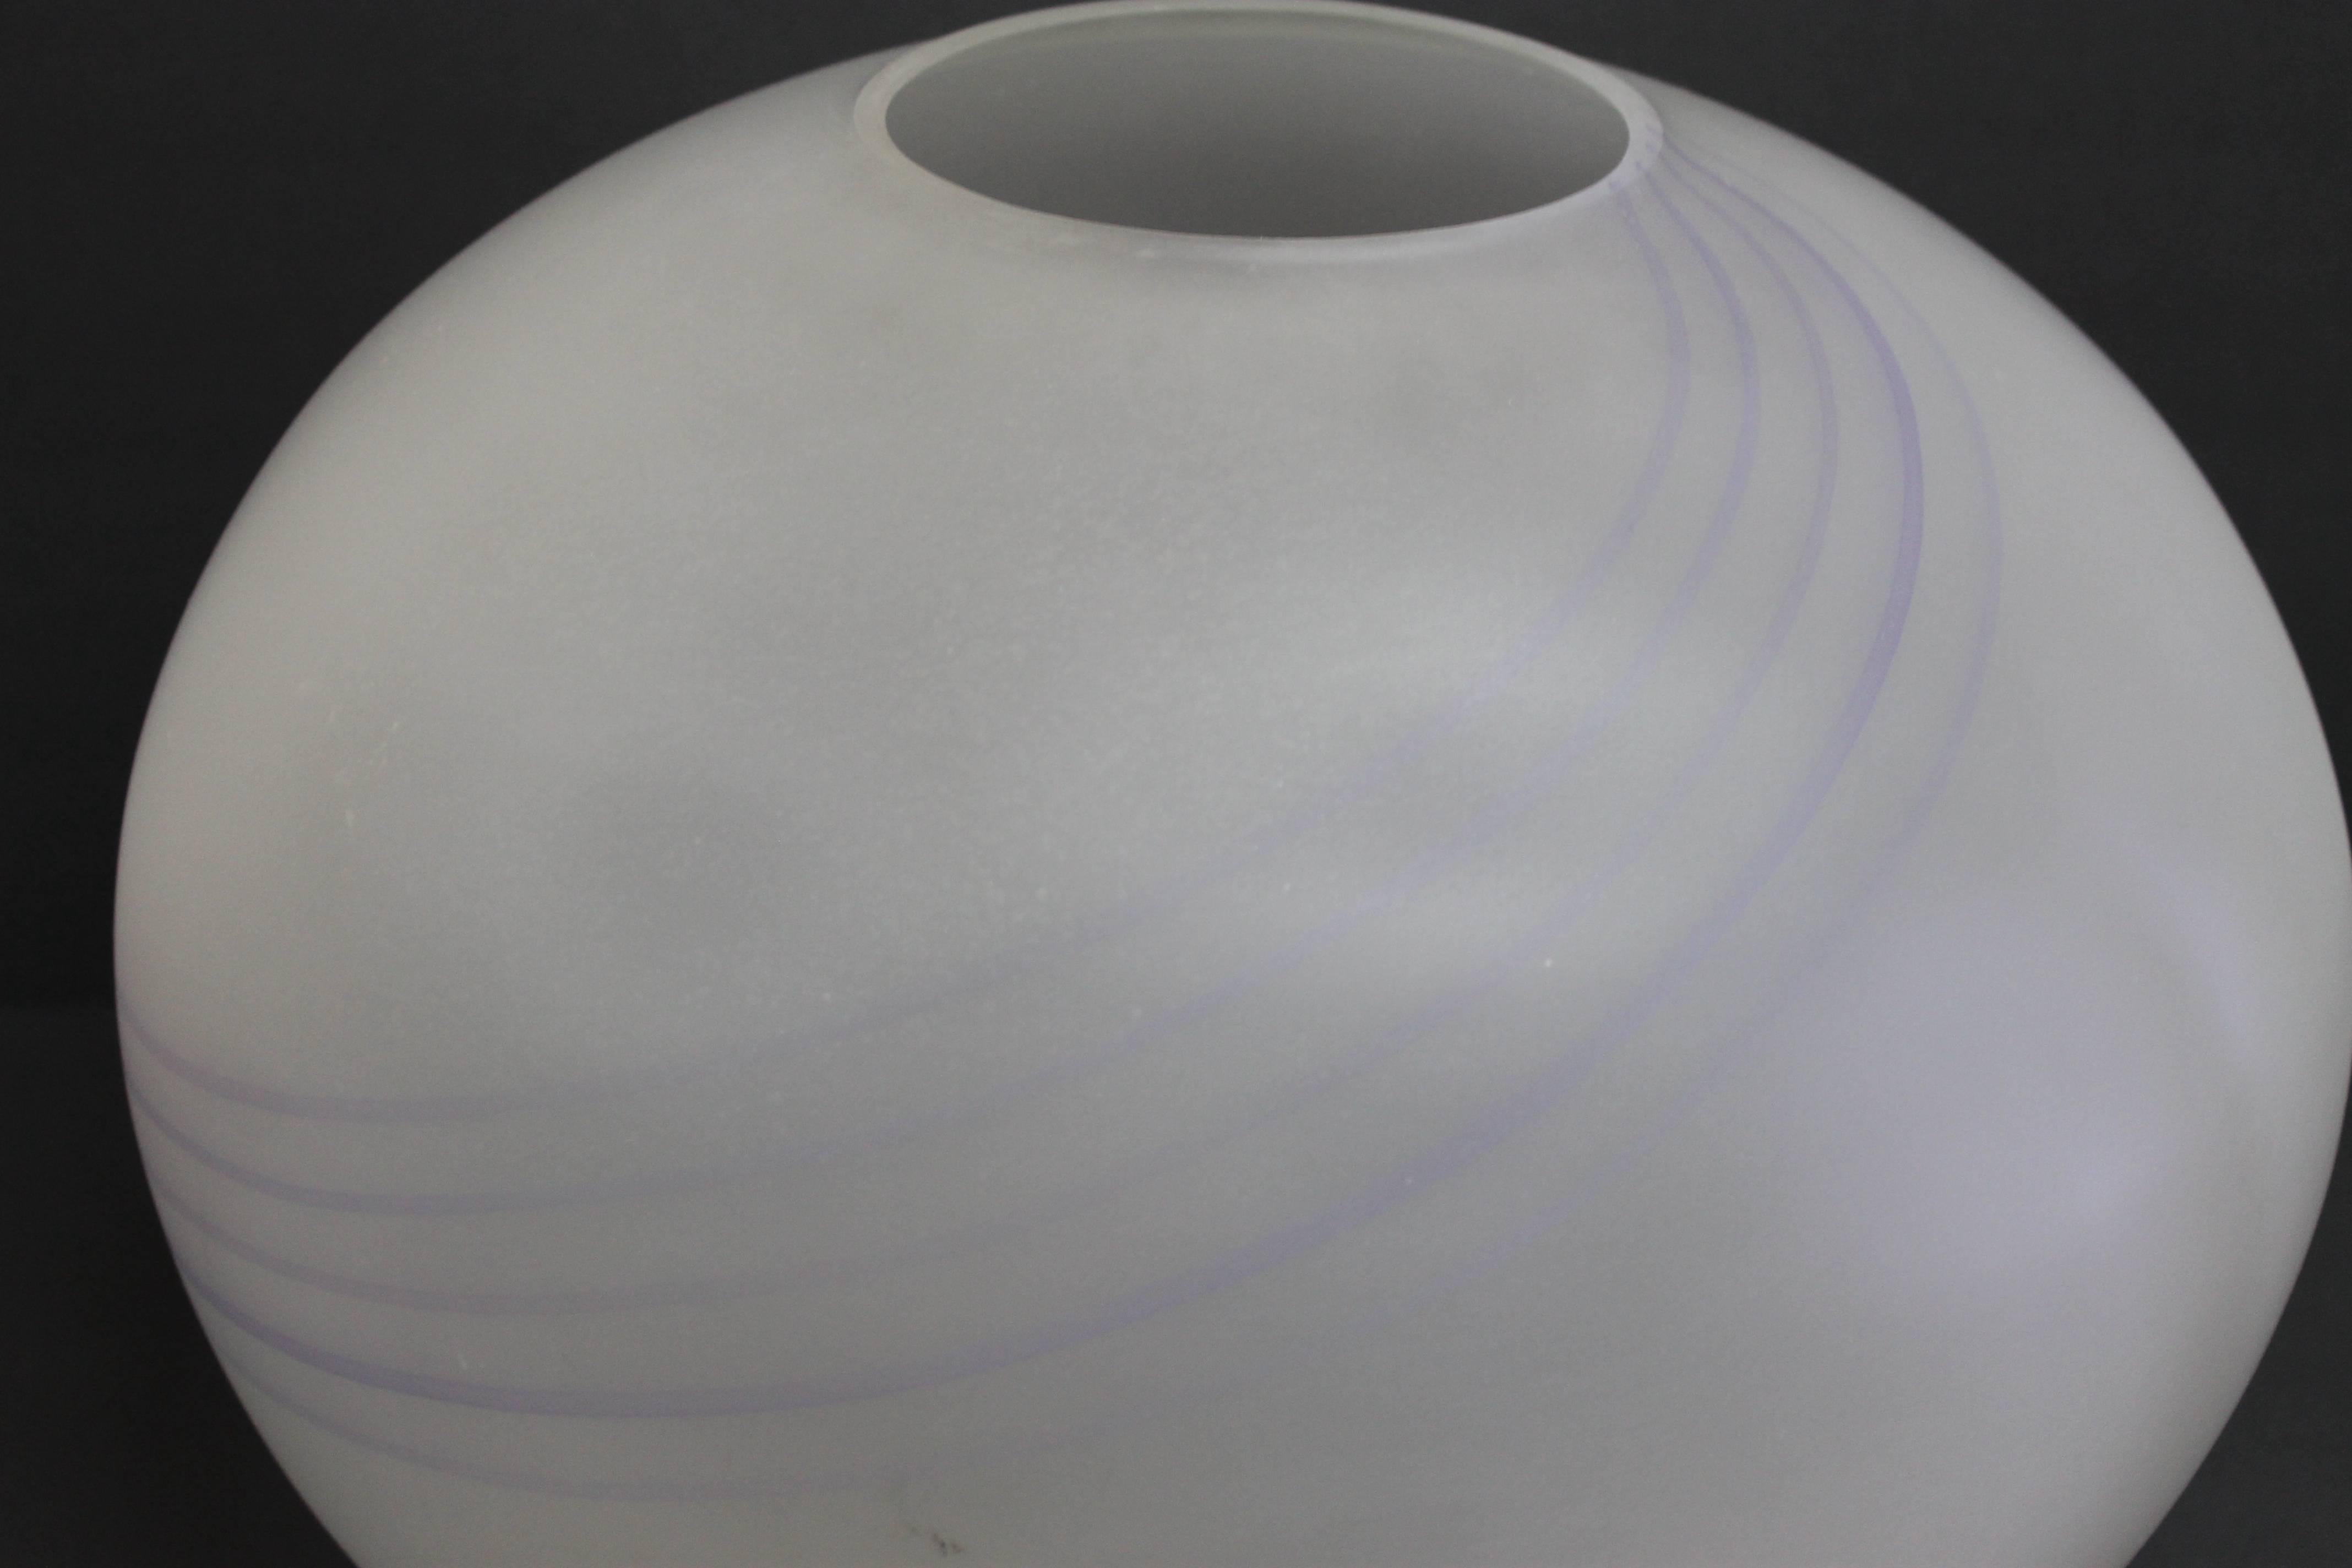 Italienische mattierte Vase mit fünf violetten Bändern, die am Boden der Vase beginnen und nach oben kreisen. Auf der Unterseite befindet sich ein Aufkleber mit der Aufschrift 